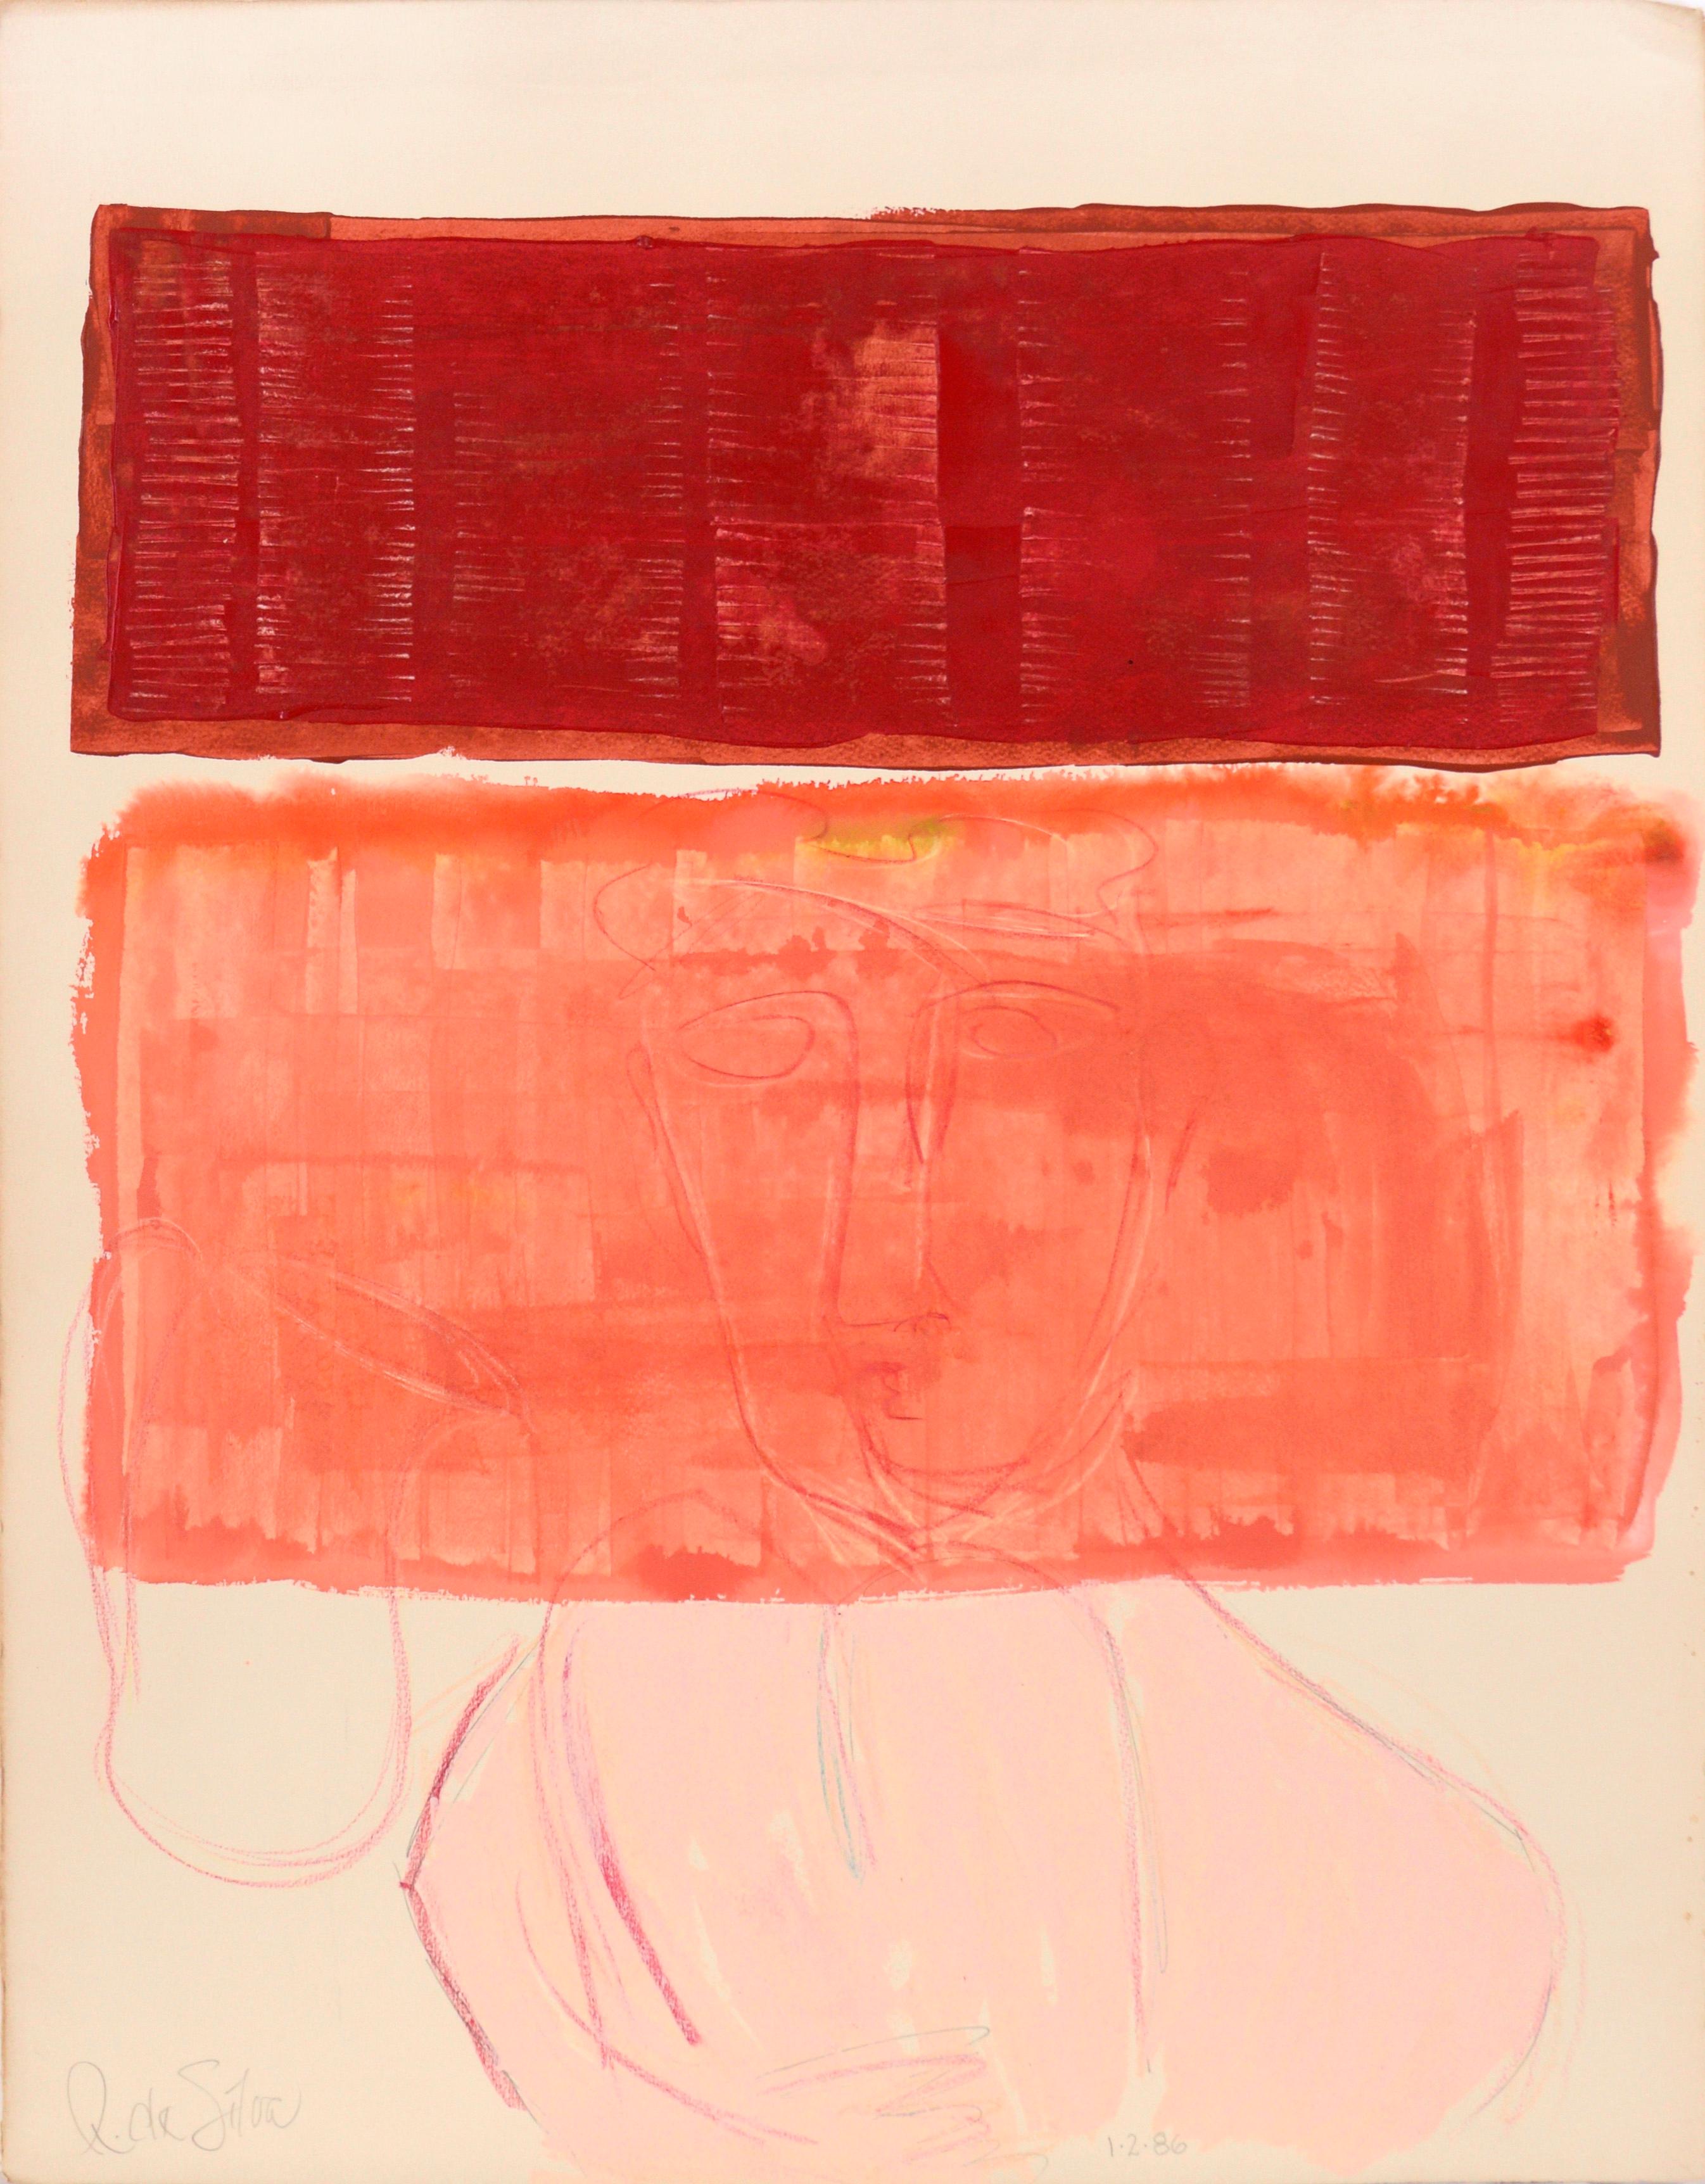 Abstract Painting Ricardo de Silva - Portrait avec blocs roses et rouges en acrylique sur papier épais